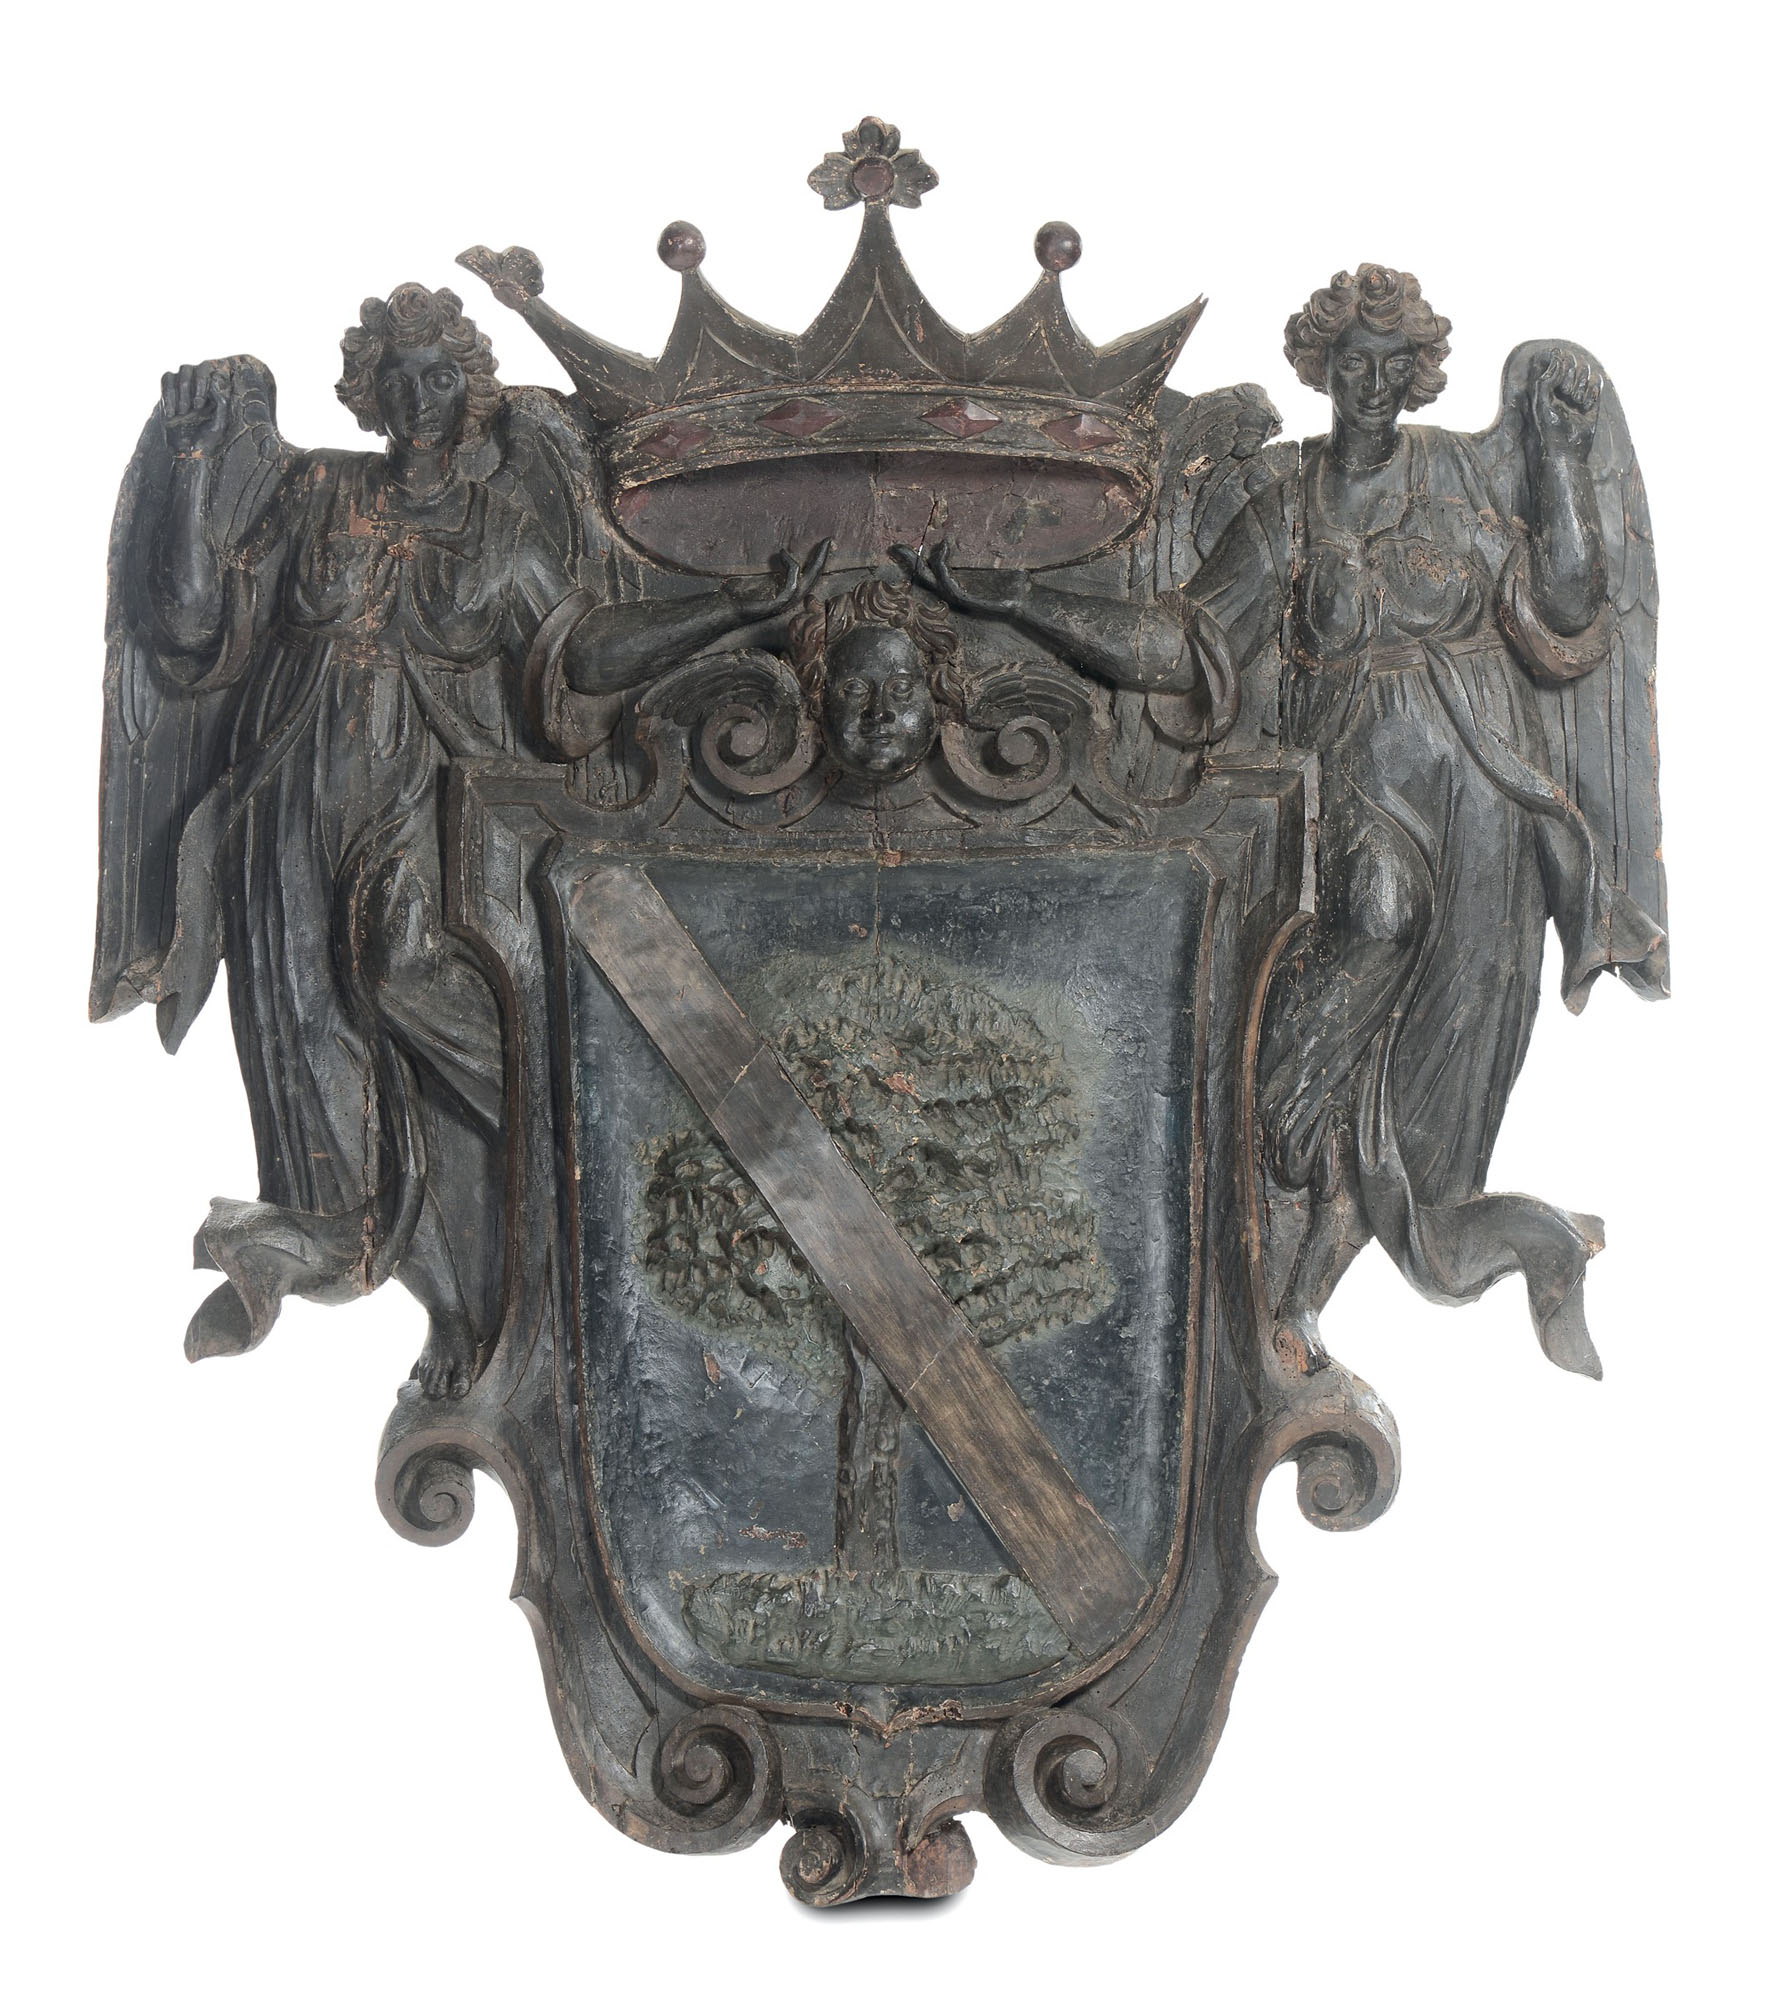 Grande stemma araldico del patriziato veneto in legno scolpito e dipinto. Veneto fine del XVI -